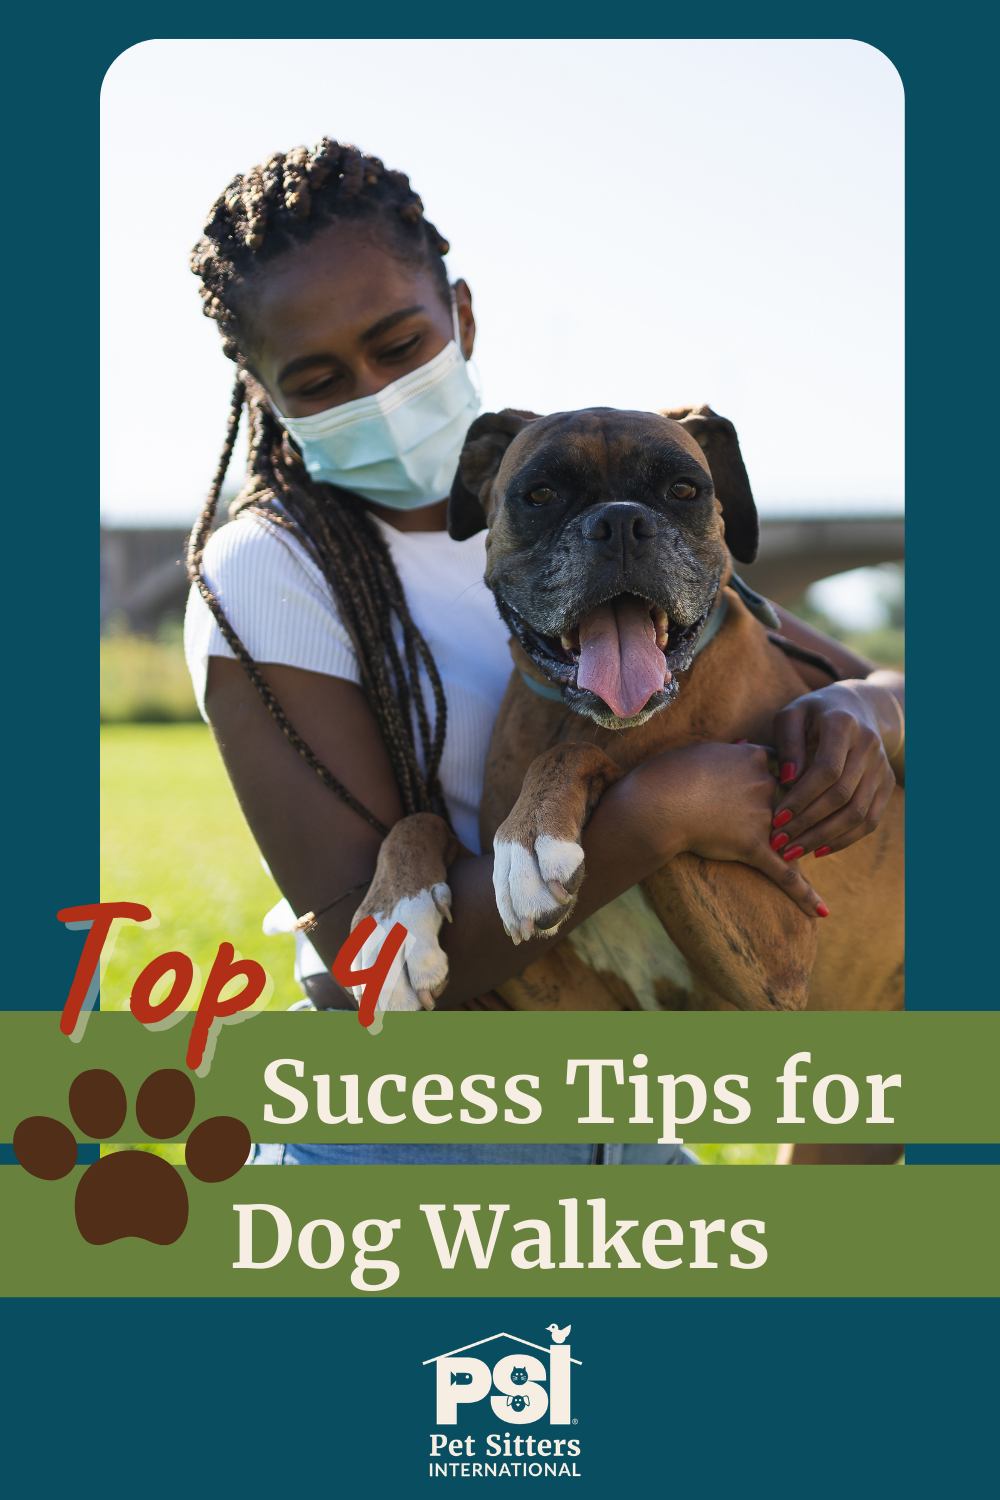 Walter's Walks Pet Sitting And Dog Walking